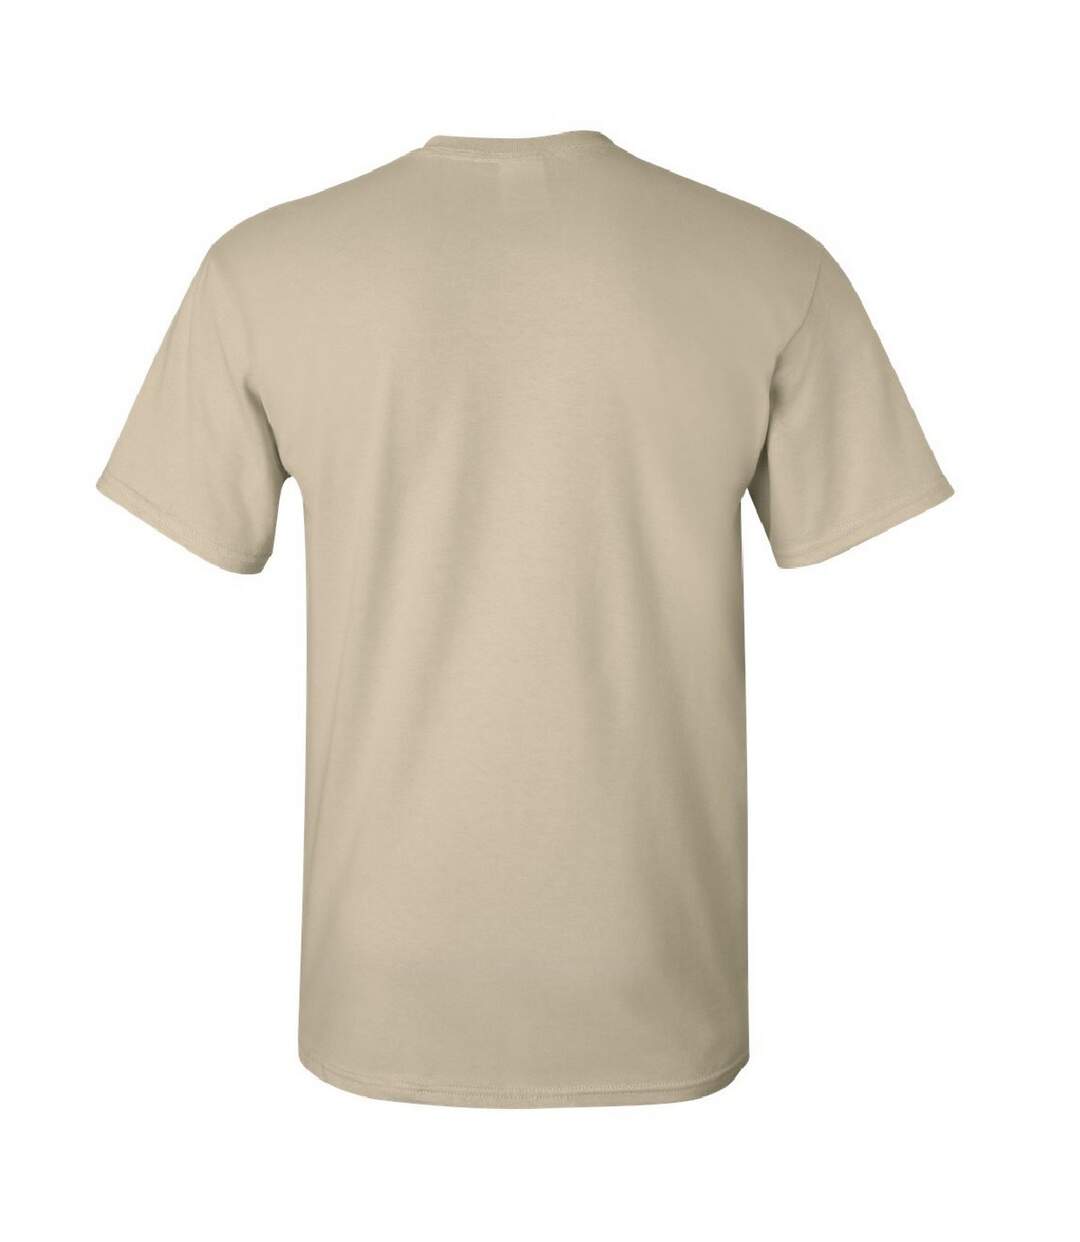 Gildan Mens Ultra Cotton Short Sleeve T-Shirt (Sand)